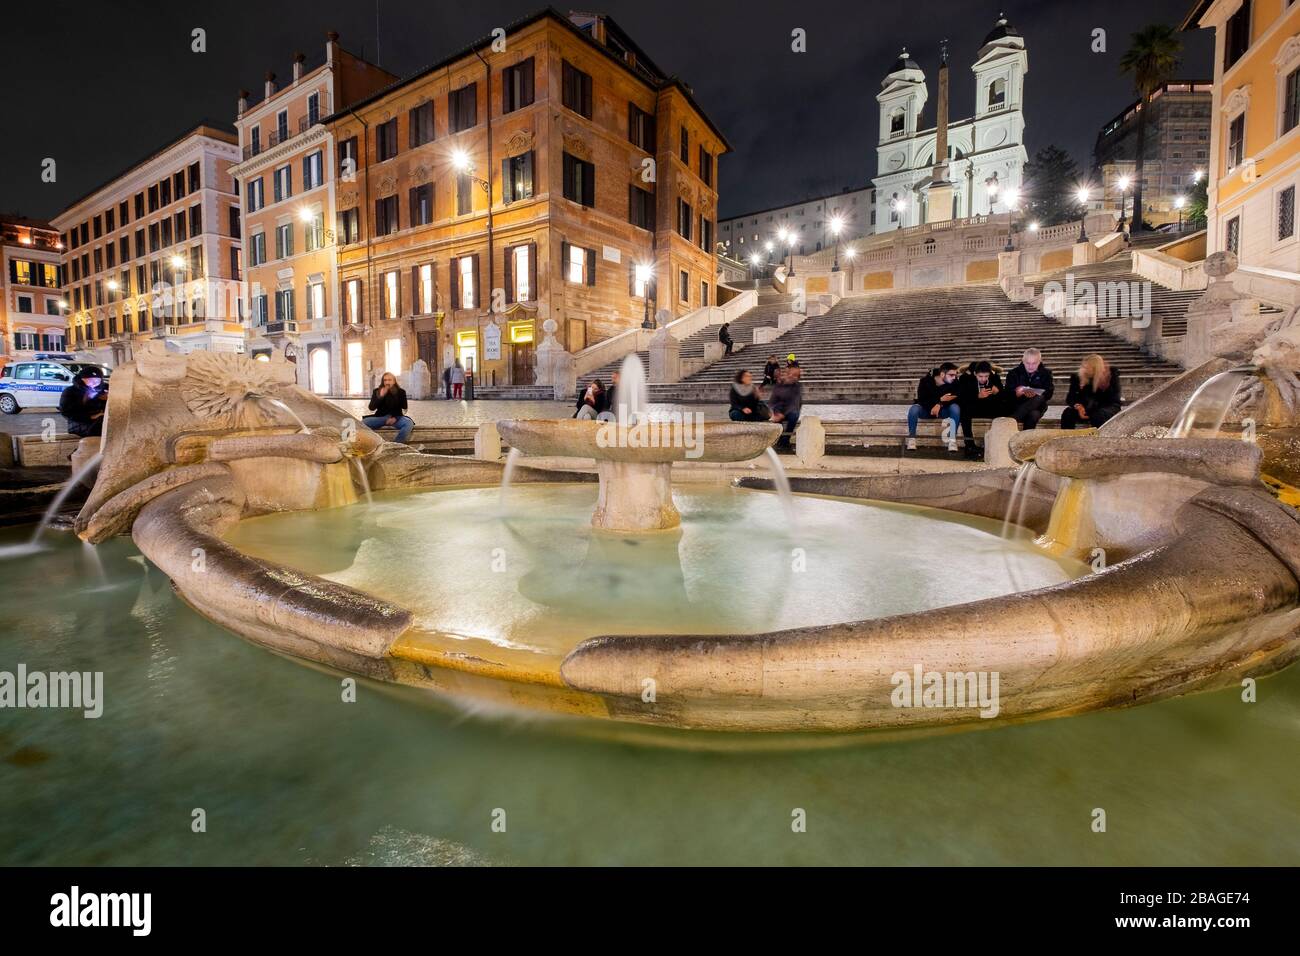 Nigh view of the Spain square and Fontana della Barcaccia, Piazza di Spagna. Rome Stock Photo